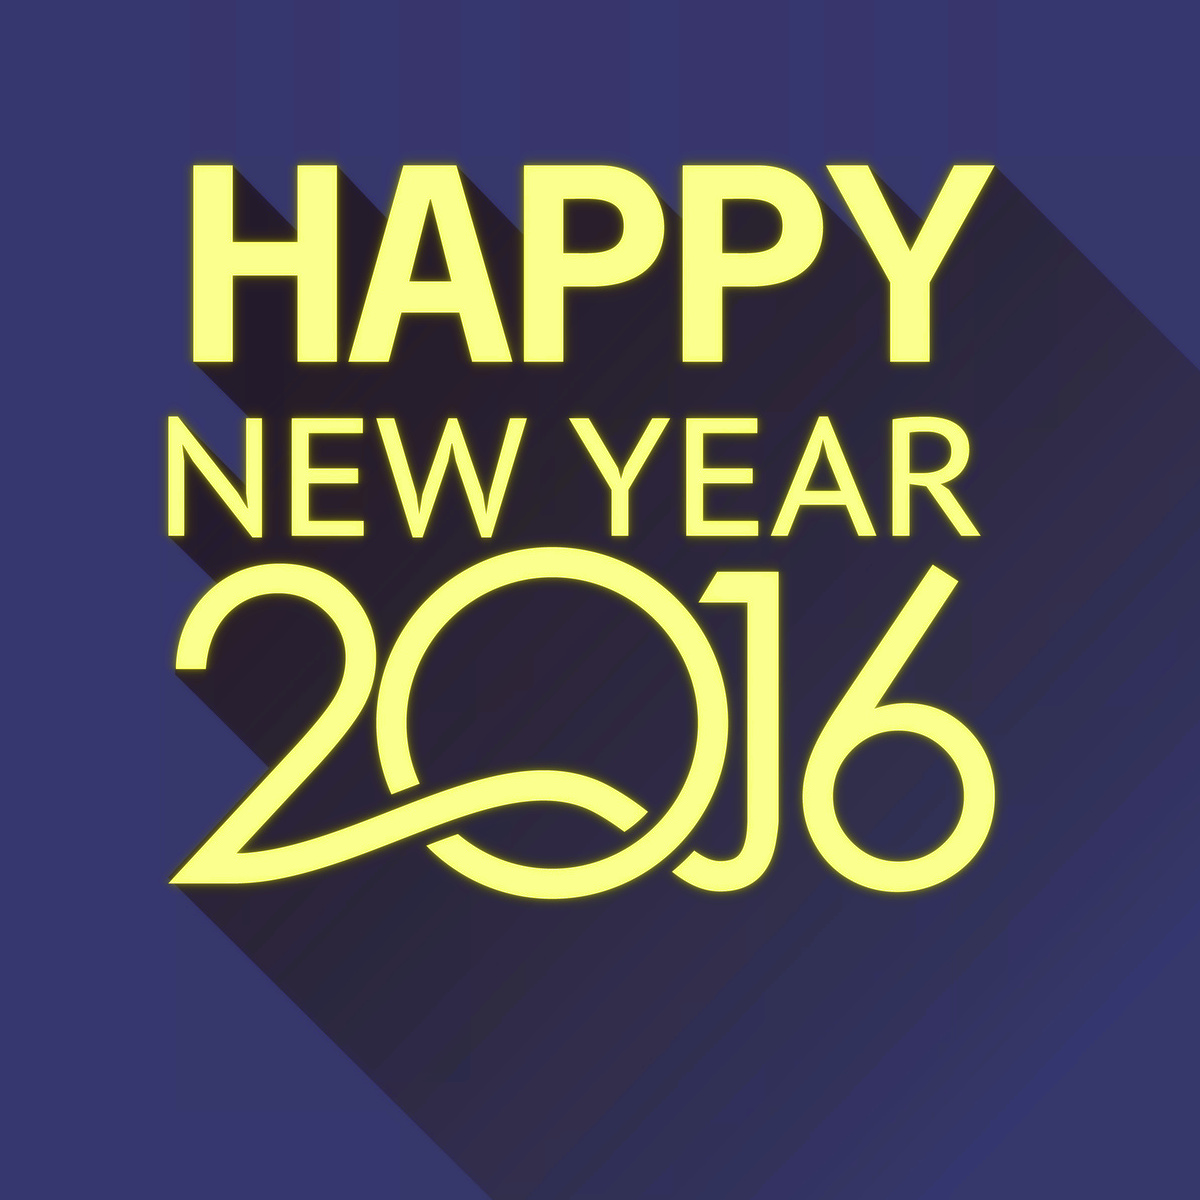 Kumpulan DP BBM Dan Meme Ucapan Selamat Tahun Baru 2016